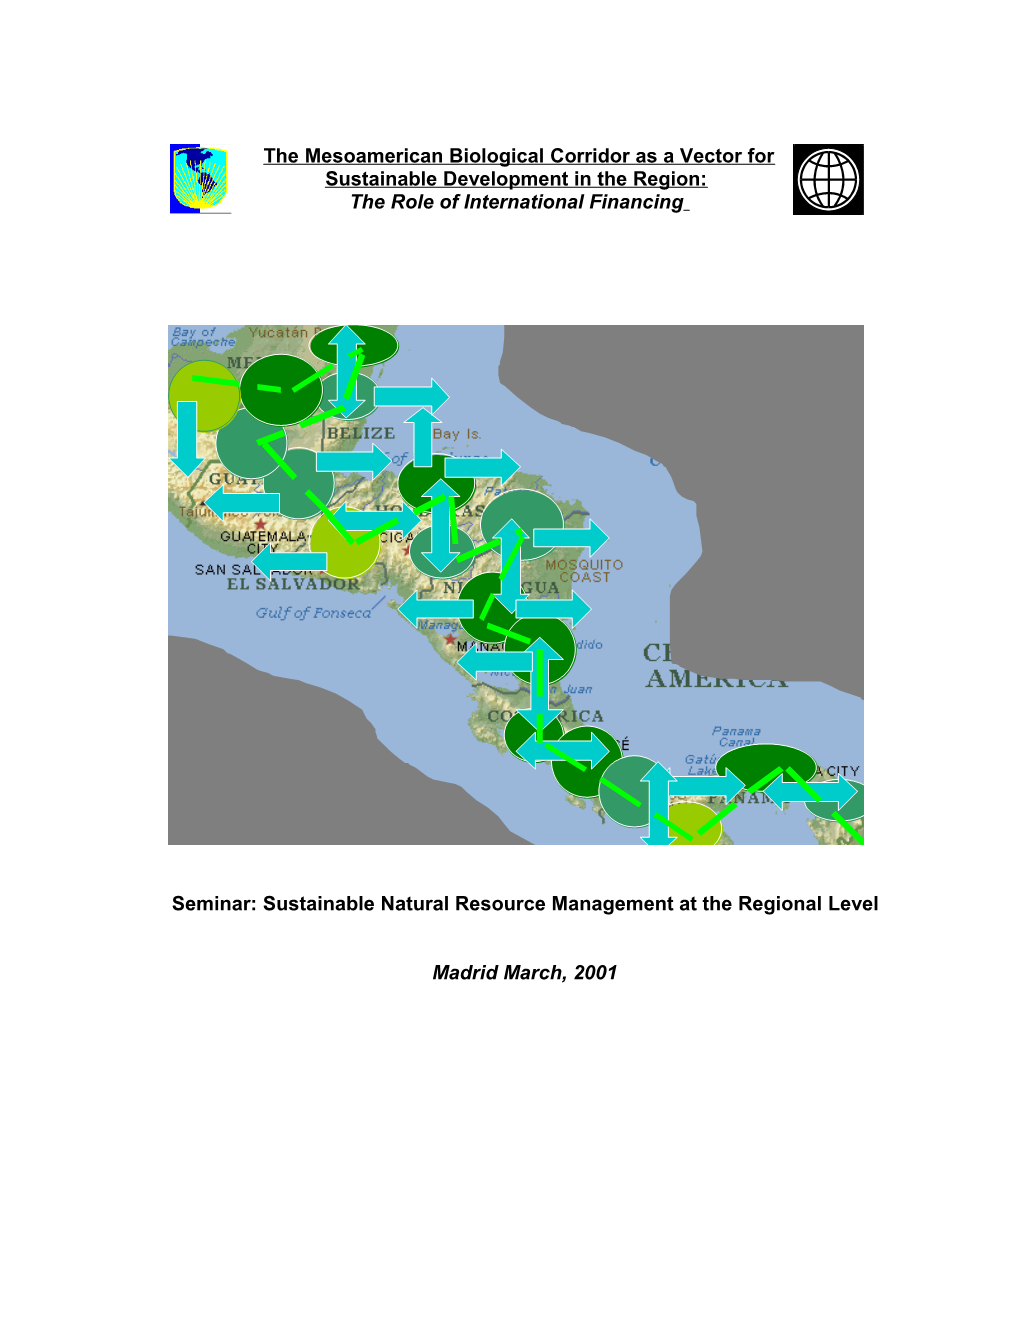 El Corredor Biológico Mesoamericano (CBM) Entrelaza Ecosistemas, Comunidades Indígenas